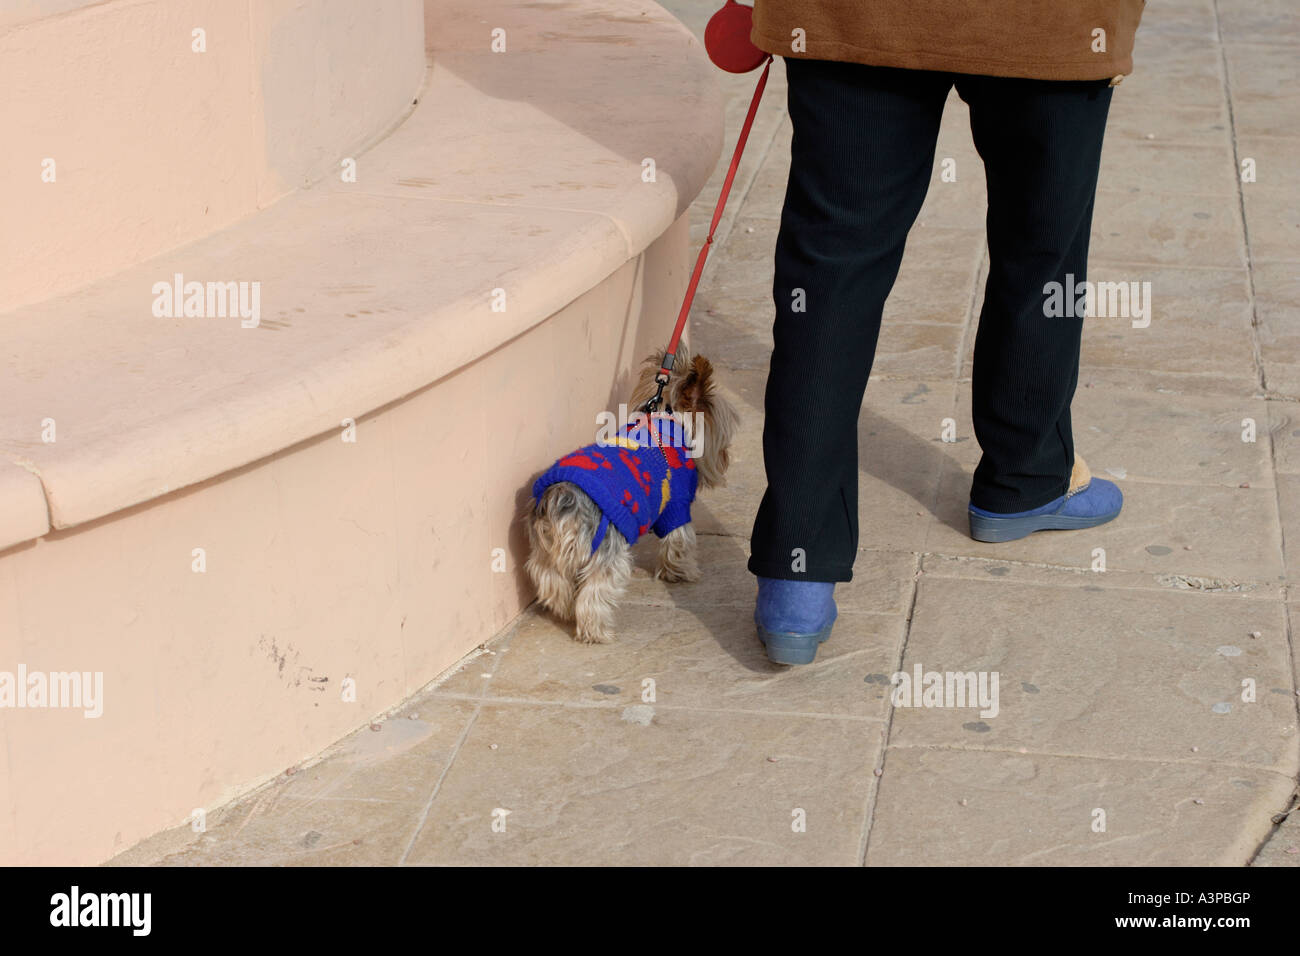 Femme portant des chaussons bleu autour du Yorkshire Terrier wearing blue coat tricoté Banque D'Images